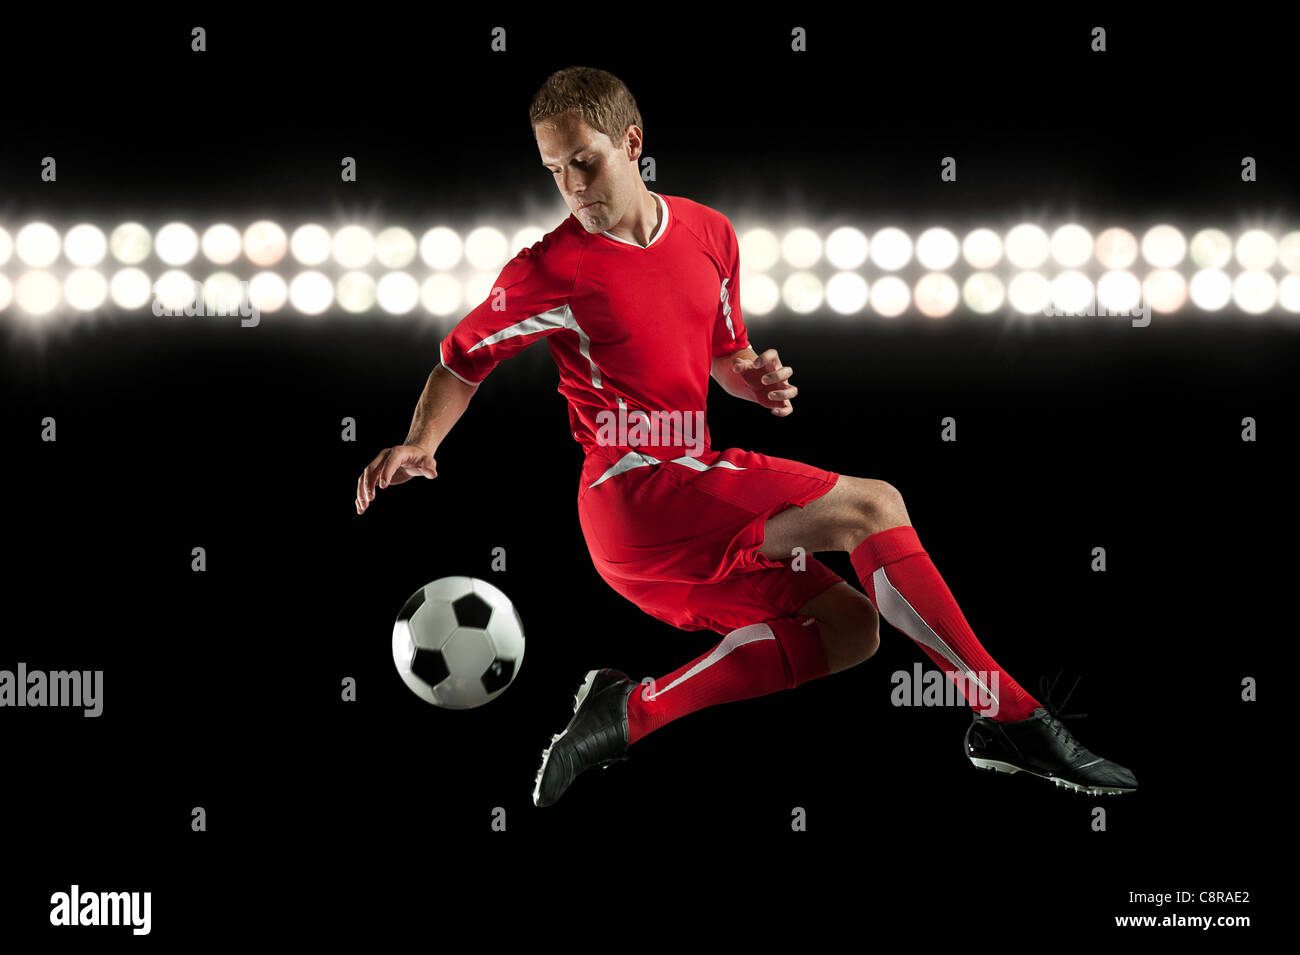 Fußball-Spieler springen in der Luft treten Kugel in der Nacht Stockfoto